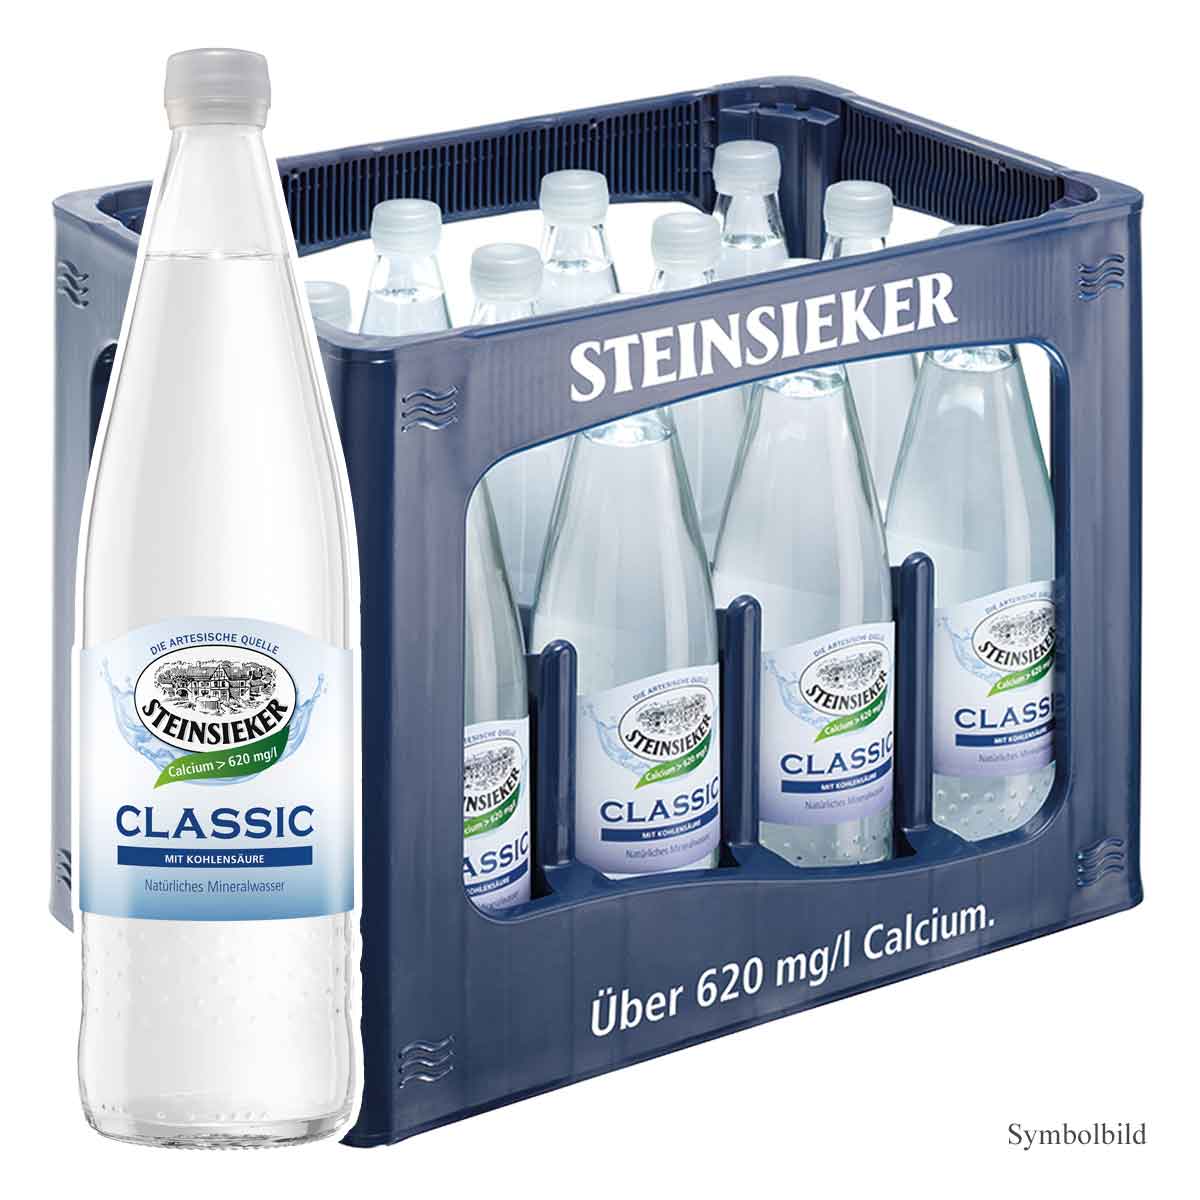 Steinsieker Mineralwasser Classic 12 x 1L PET  Getränke Lieferung in  Mönchengladbach schnell und zuverlässig